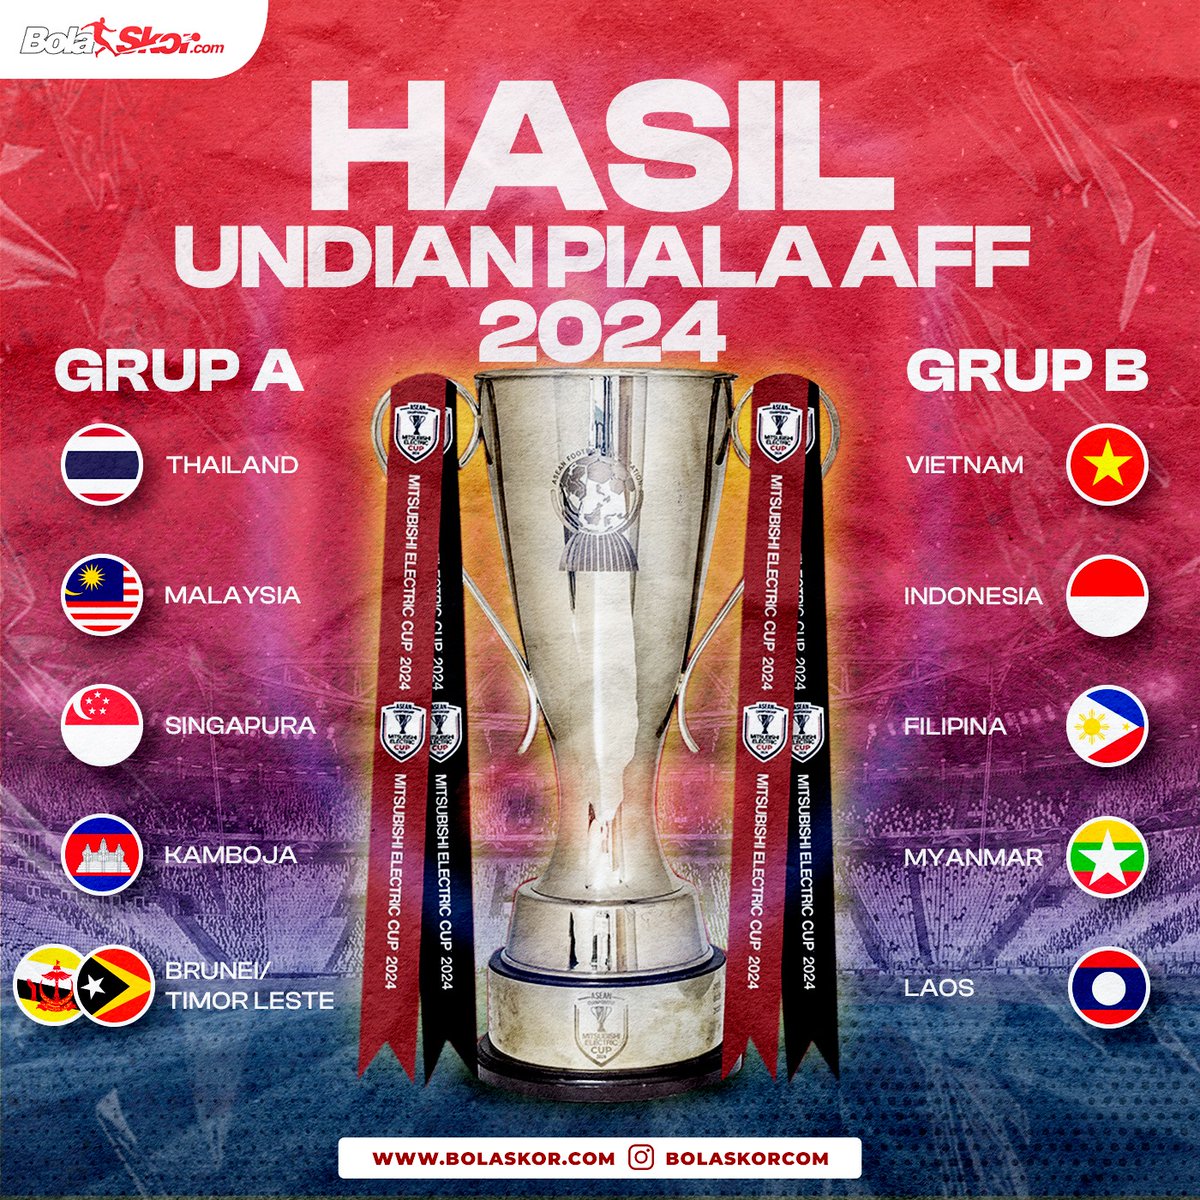 Timnas Indonesia tergabung di Grup B Piala AFF 2024 bersama Vietnam, Filipina, Myanmar, dan Laos.

Kompetisi ini nantinya bakal berlangsung pada 23 November hingga 21 Desember mendatang.

#bolaskorcom #timnasindonesia #pialaaff #affcup #undian #aseancup #aseanchampionship